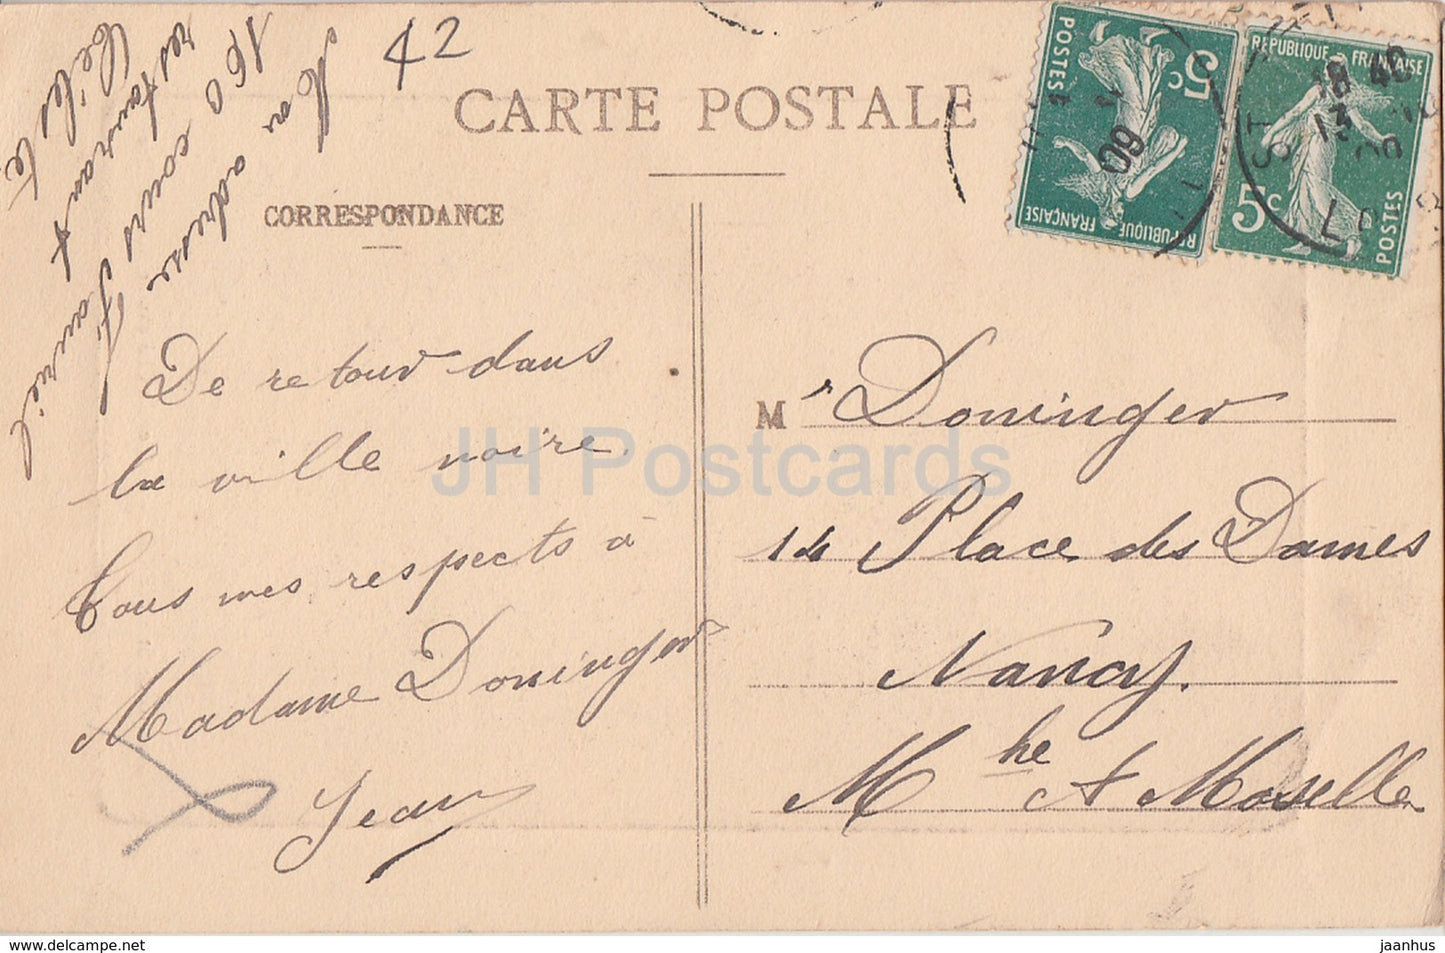 Environs de St Etienne - Ruines du Chateau Rochetaillee - Burgruine - alte Postkarte - 1909 - Frankreich - gebraucht